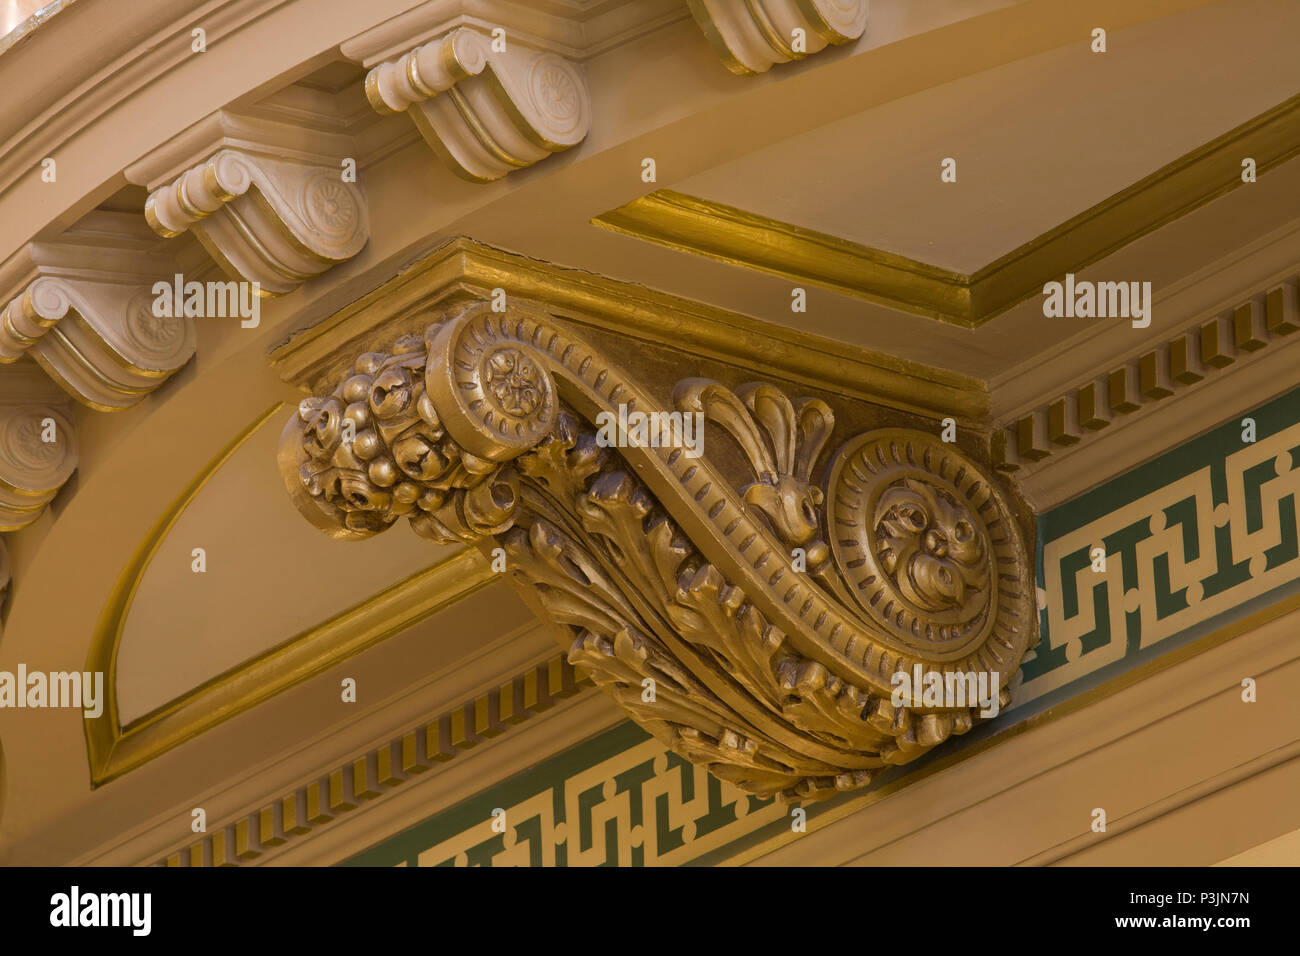 Close-up of antique classique le long de l'ornementation dorée haut des murs dans la rotonde de Montana State Capitol, Helena, MT. Banque D'Images